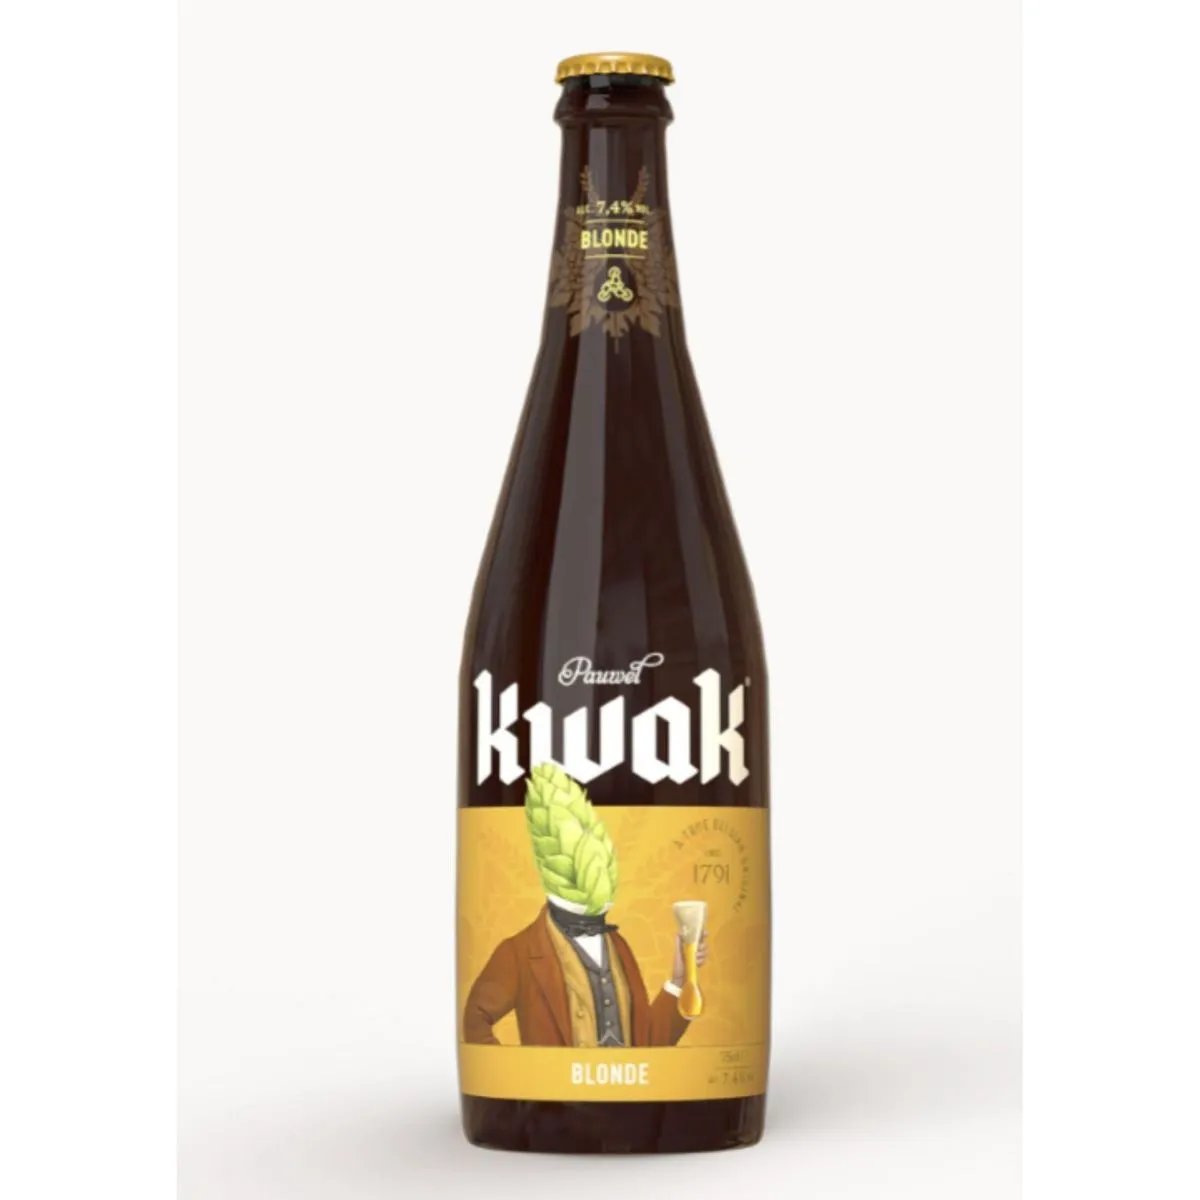  bière kwak